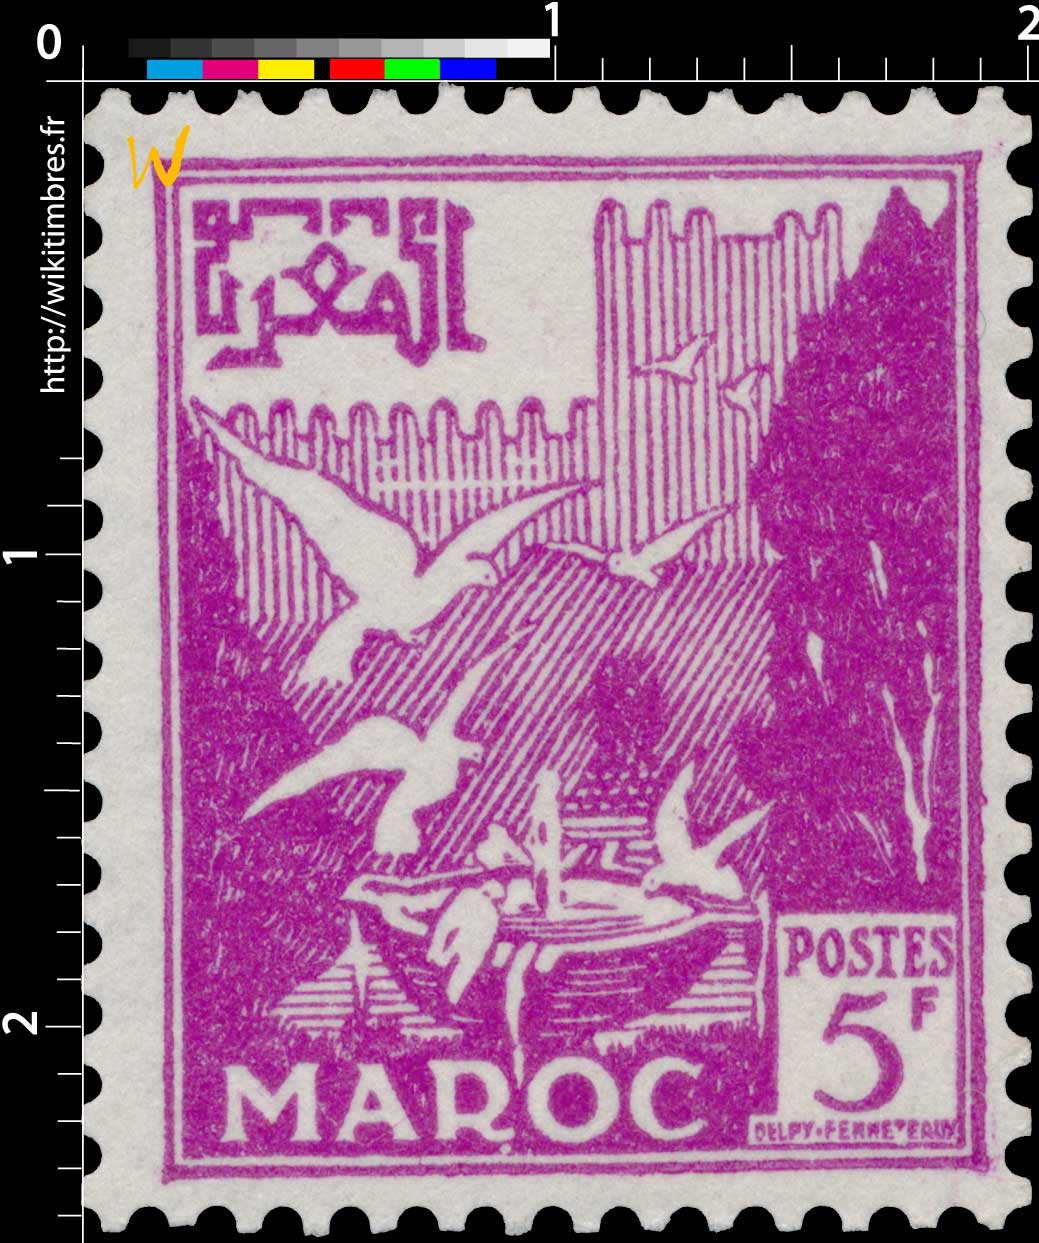 1954 Maroc - Vasque aux pigeons